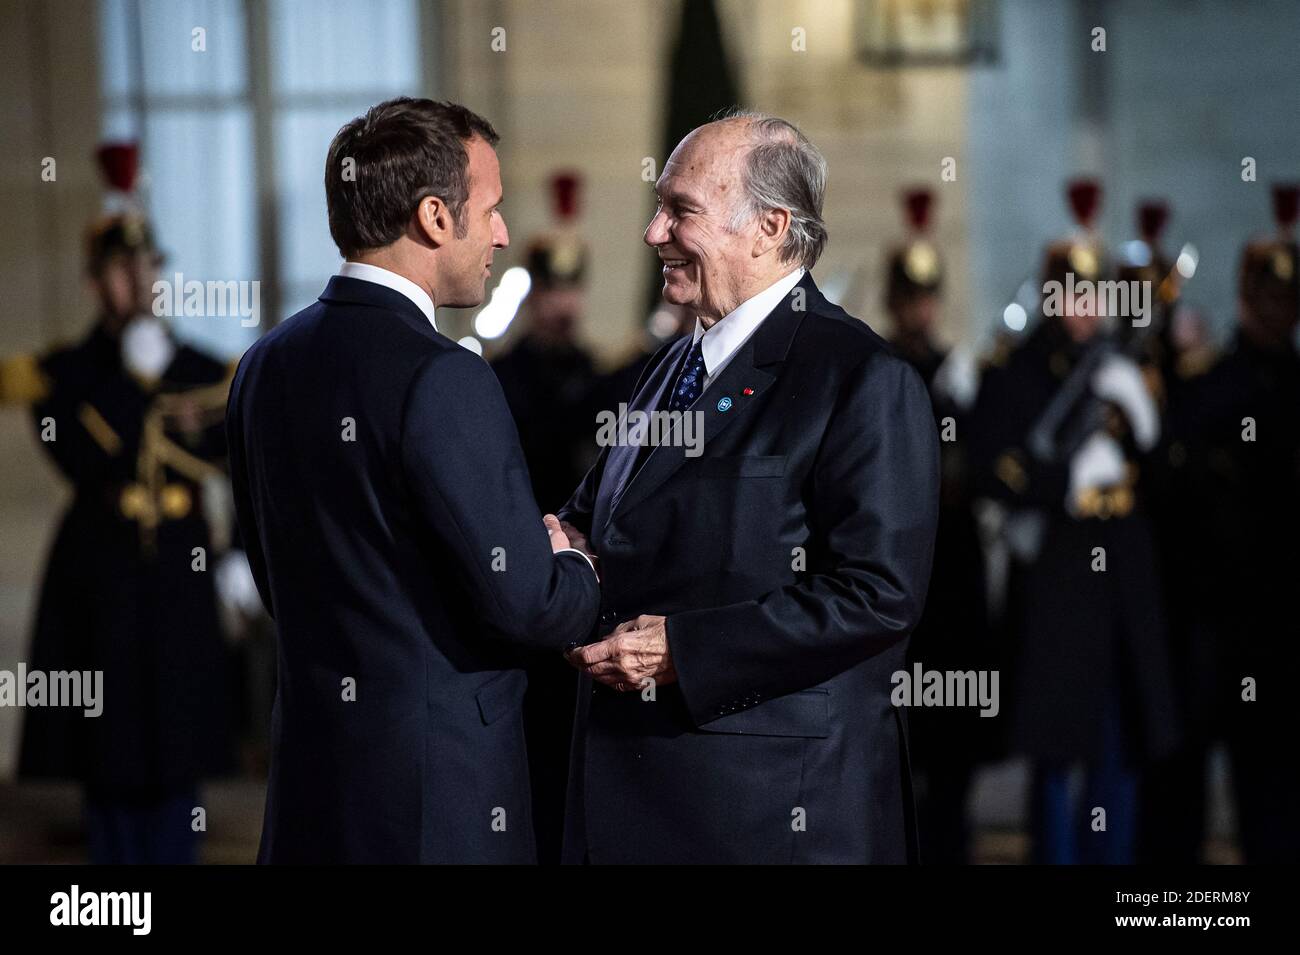 Il presidente francese Emmanuel Macron saluta il principe Shah Karim al Hussaini Aga Khan IV prima di una cena con i partecipanti al Forum della Pace di Parigi presso l'Elysee Palace, a Parigi, il 11 novembre 2019. Foto di Eliot Blondt/ABACAPRESS.COM Foto Stock